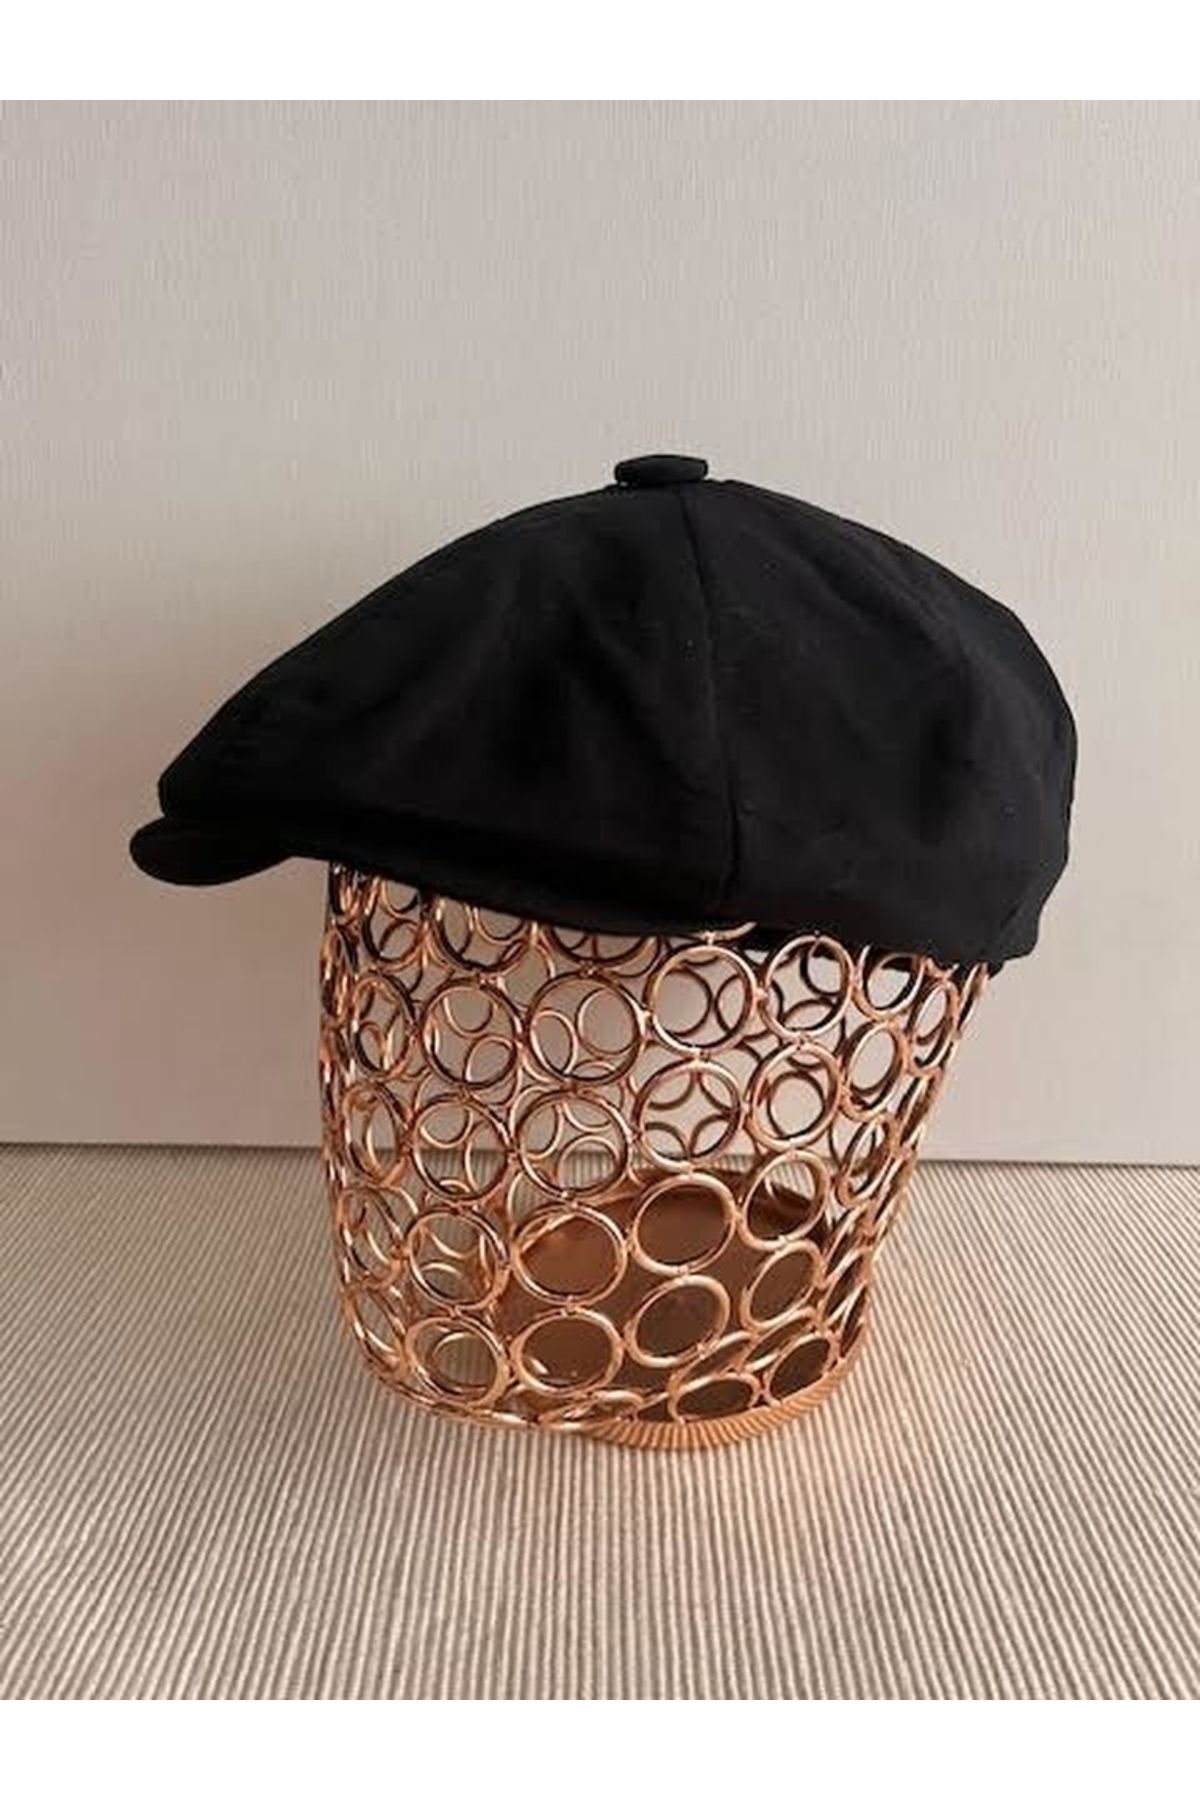 CosmoOutlet İngiliz Stili Sekiz Parça Arkası Lastikli Yazlık Siyah Şapka